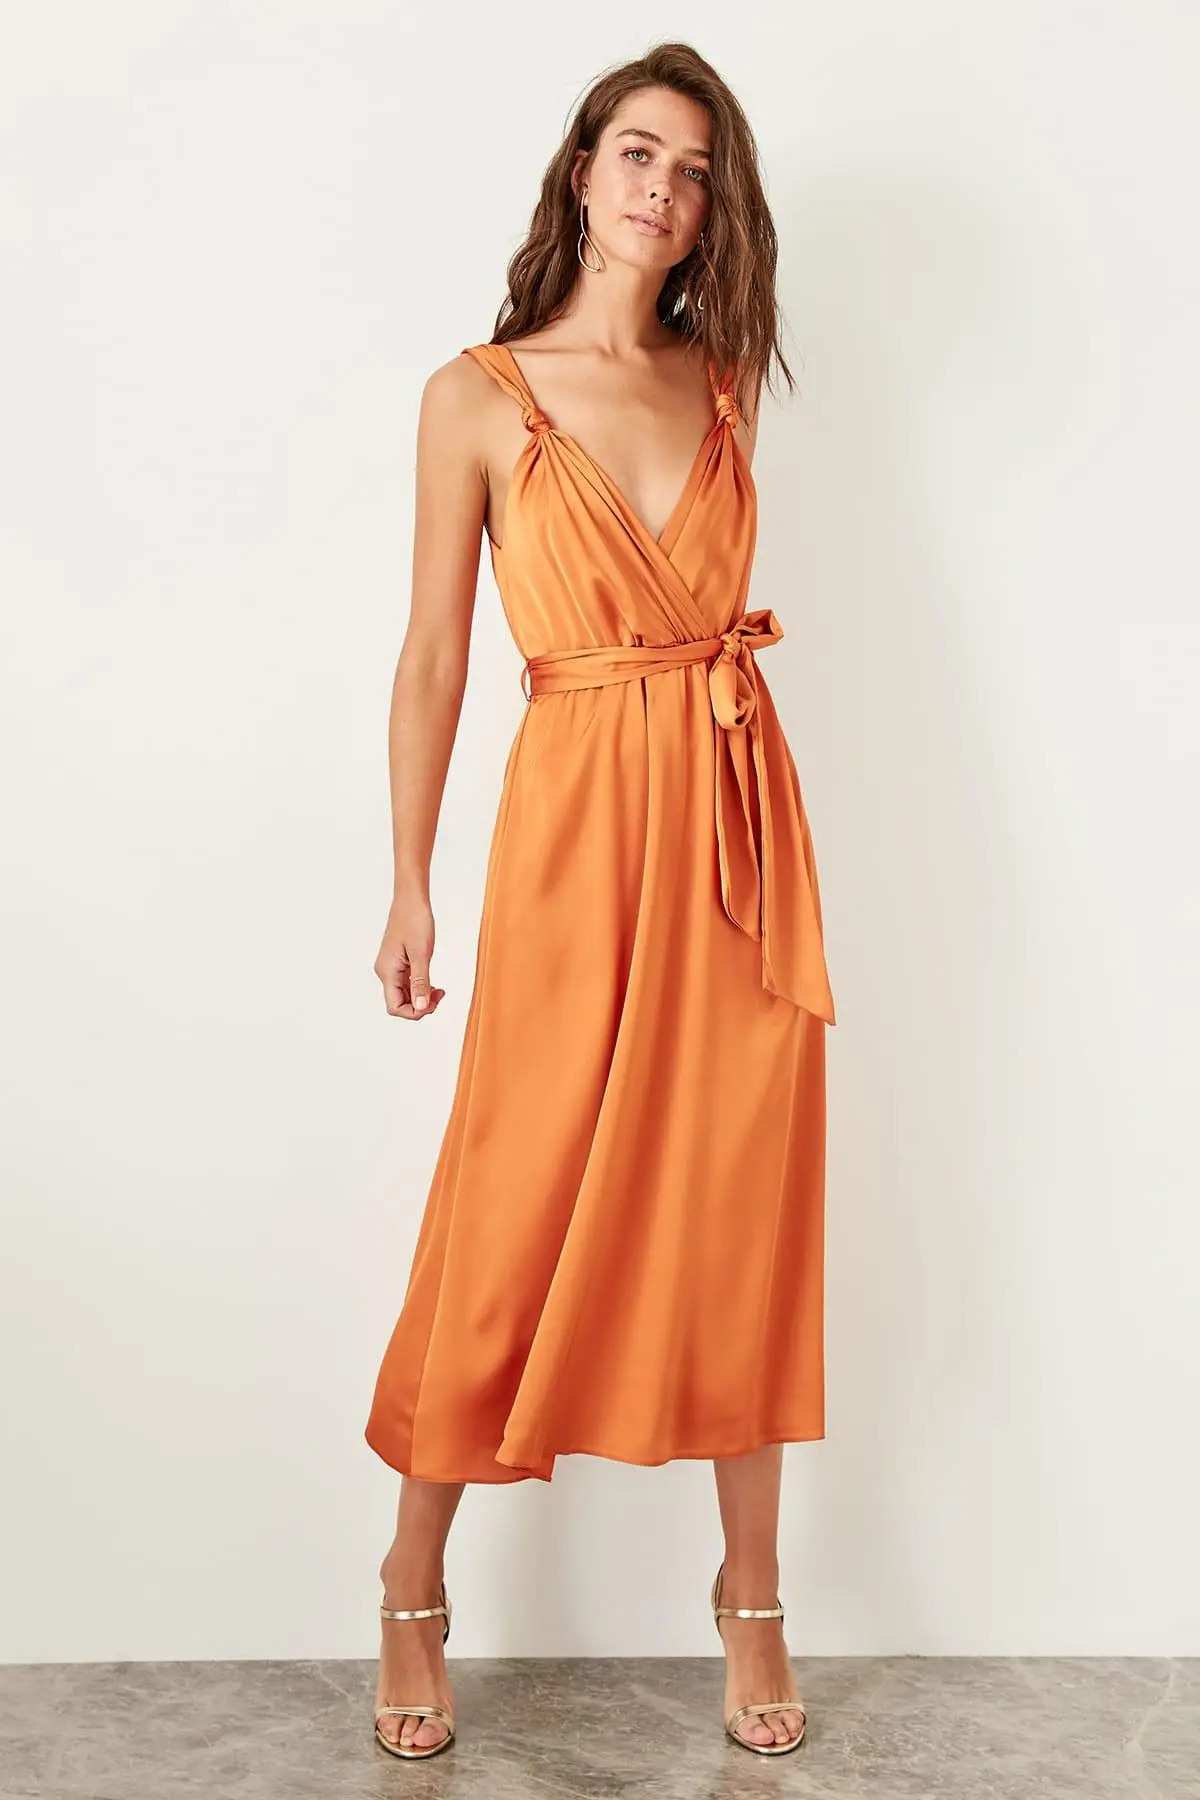 Оранжевое платье с поясом TPRSS19BB0283 от AliExpress RU&CIS NEW